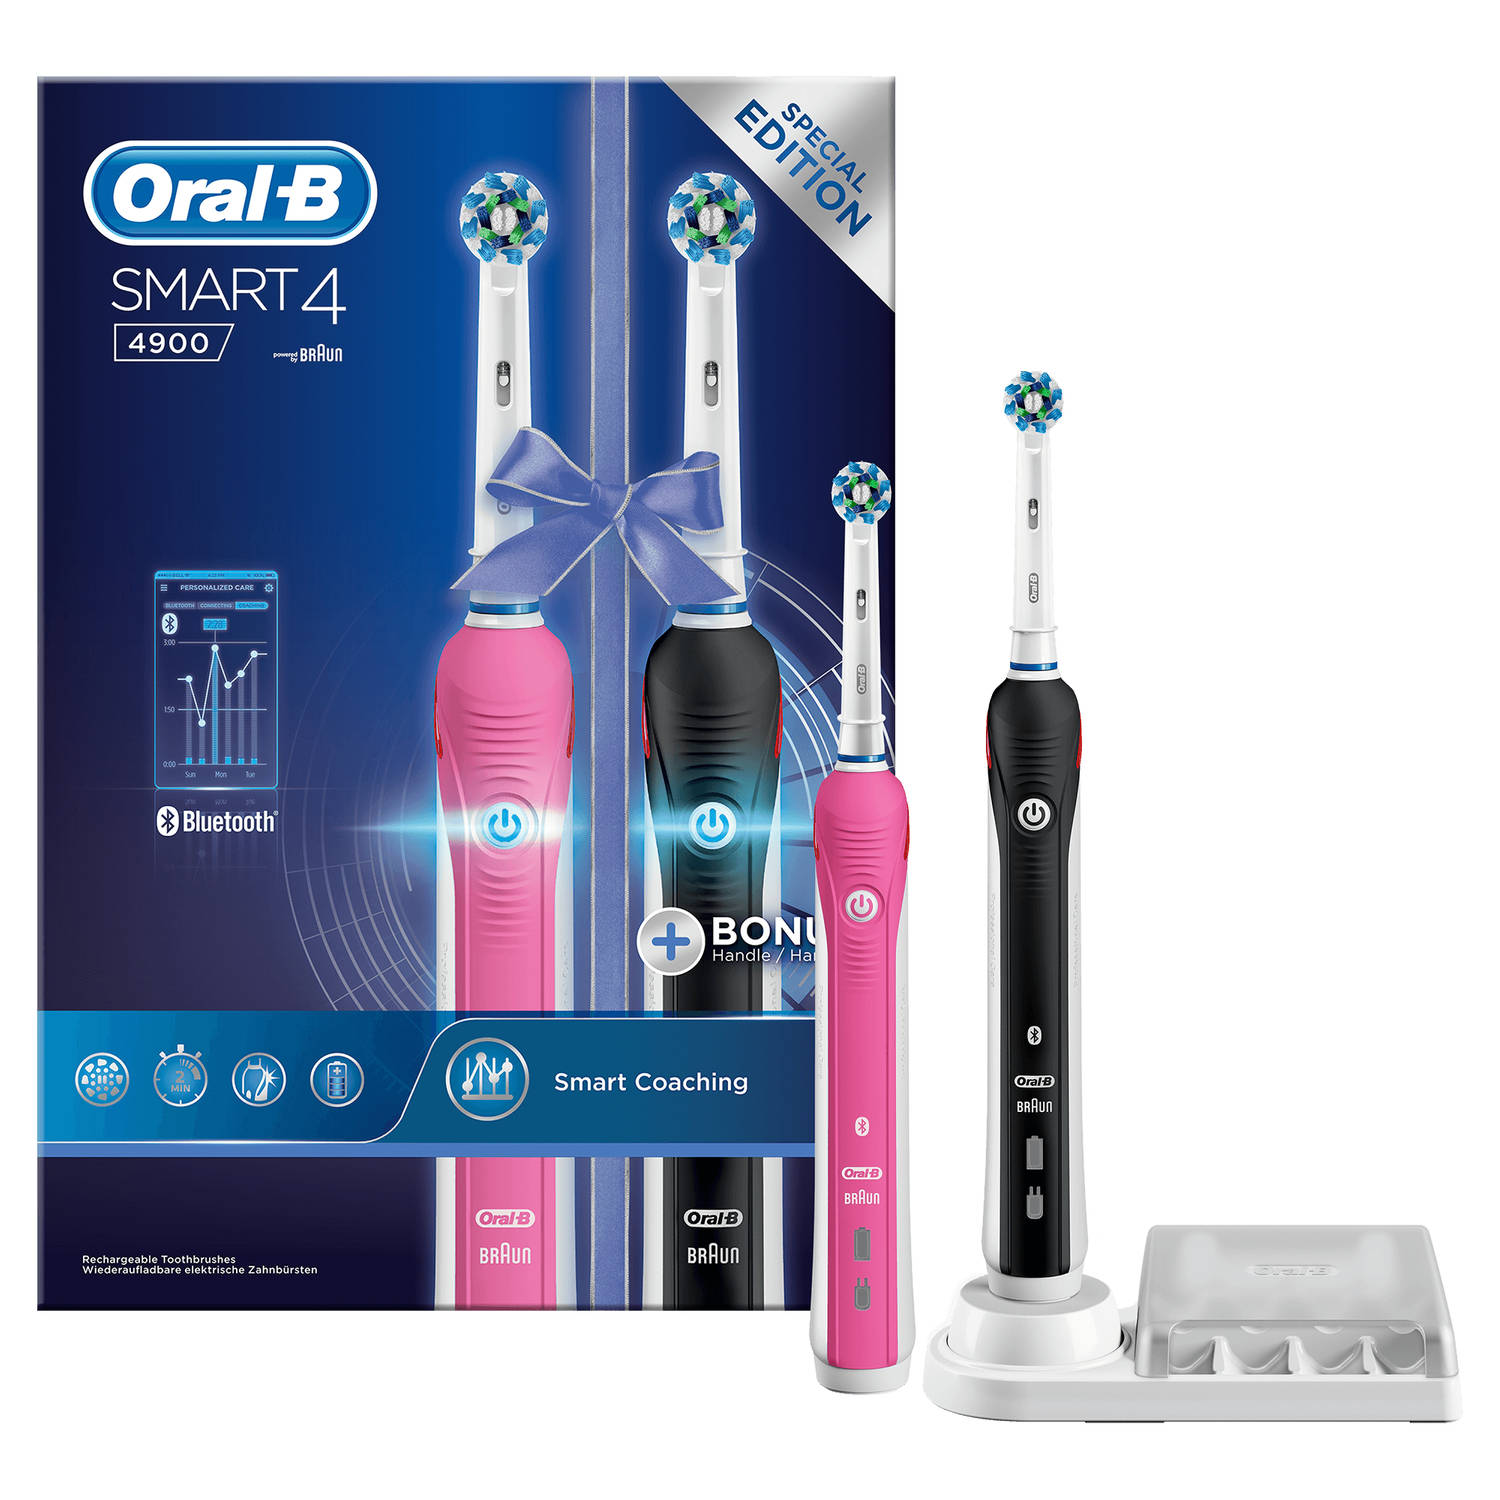 anders waar dan ook dik Oral-B elektrische tandenborstel Smart 4 4900 Duo zwart en roze - 3  poetsstanden | Blokker